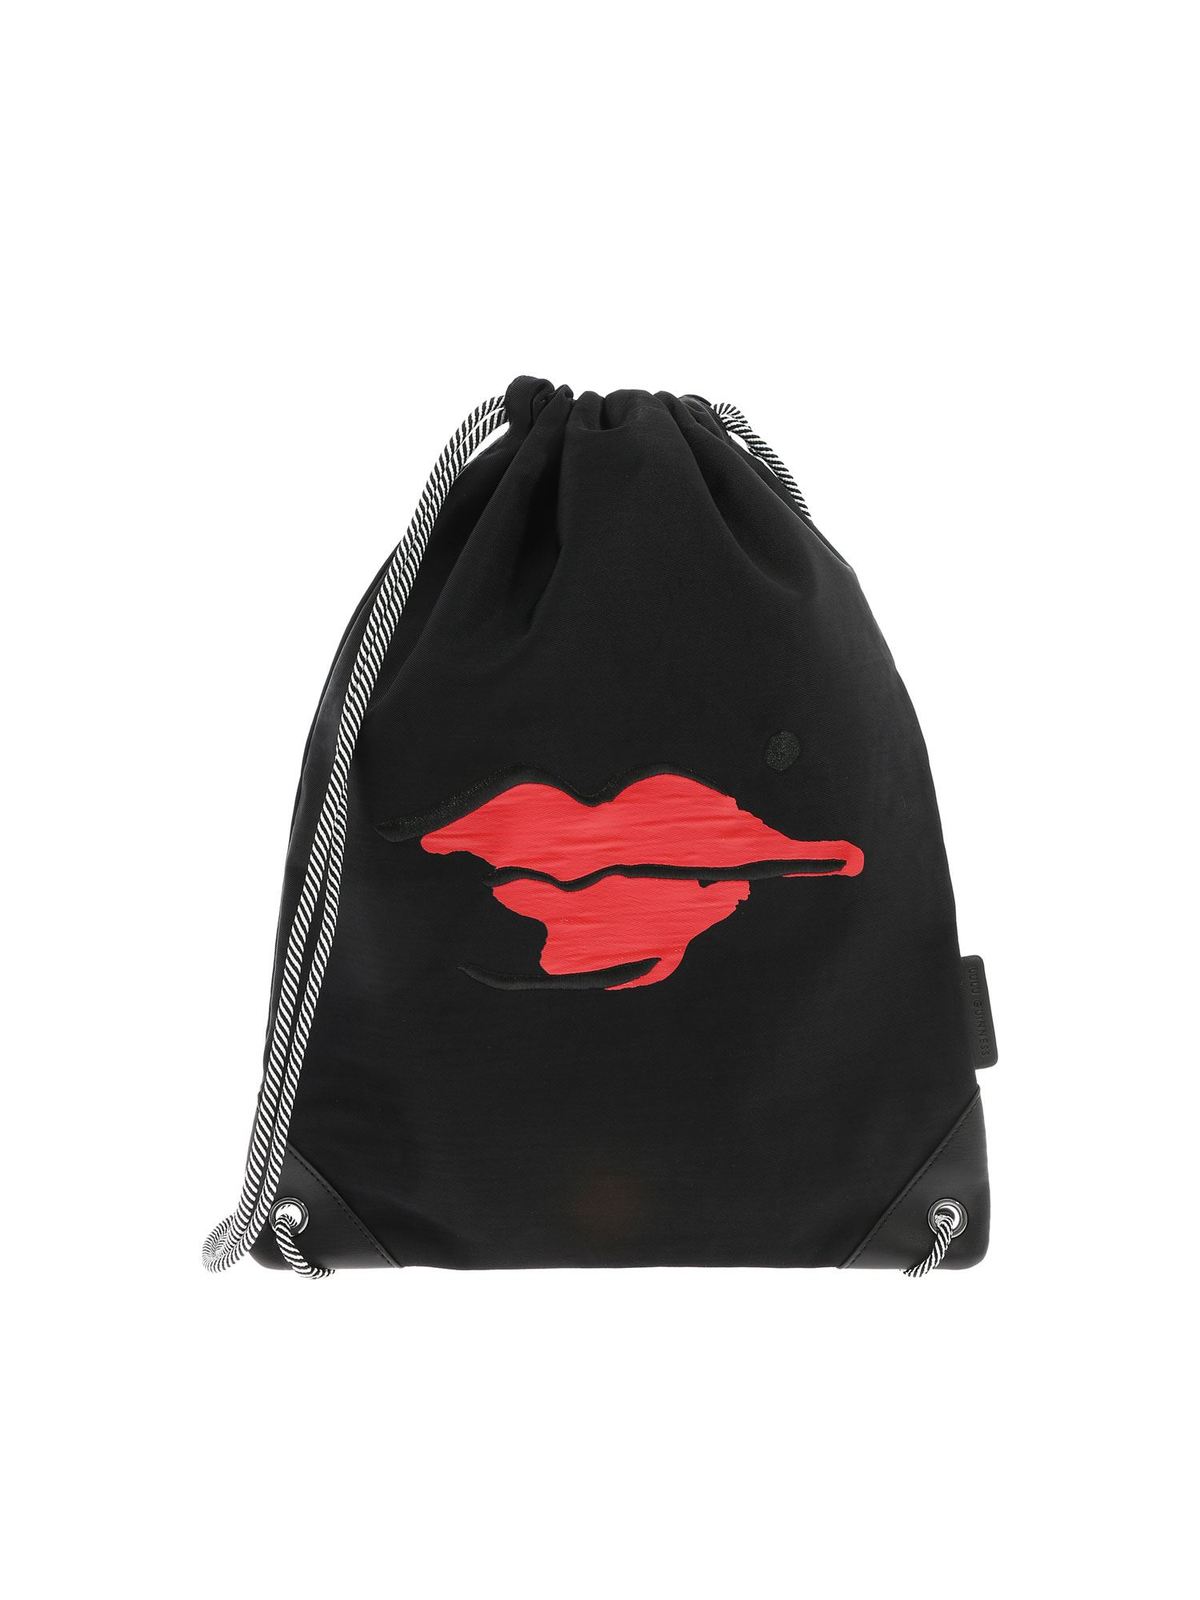 Lulu Guinness Delphine Beauty Spot Bag In Black